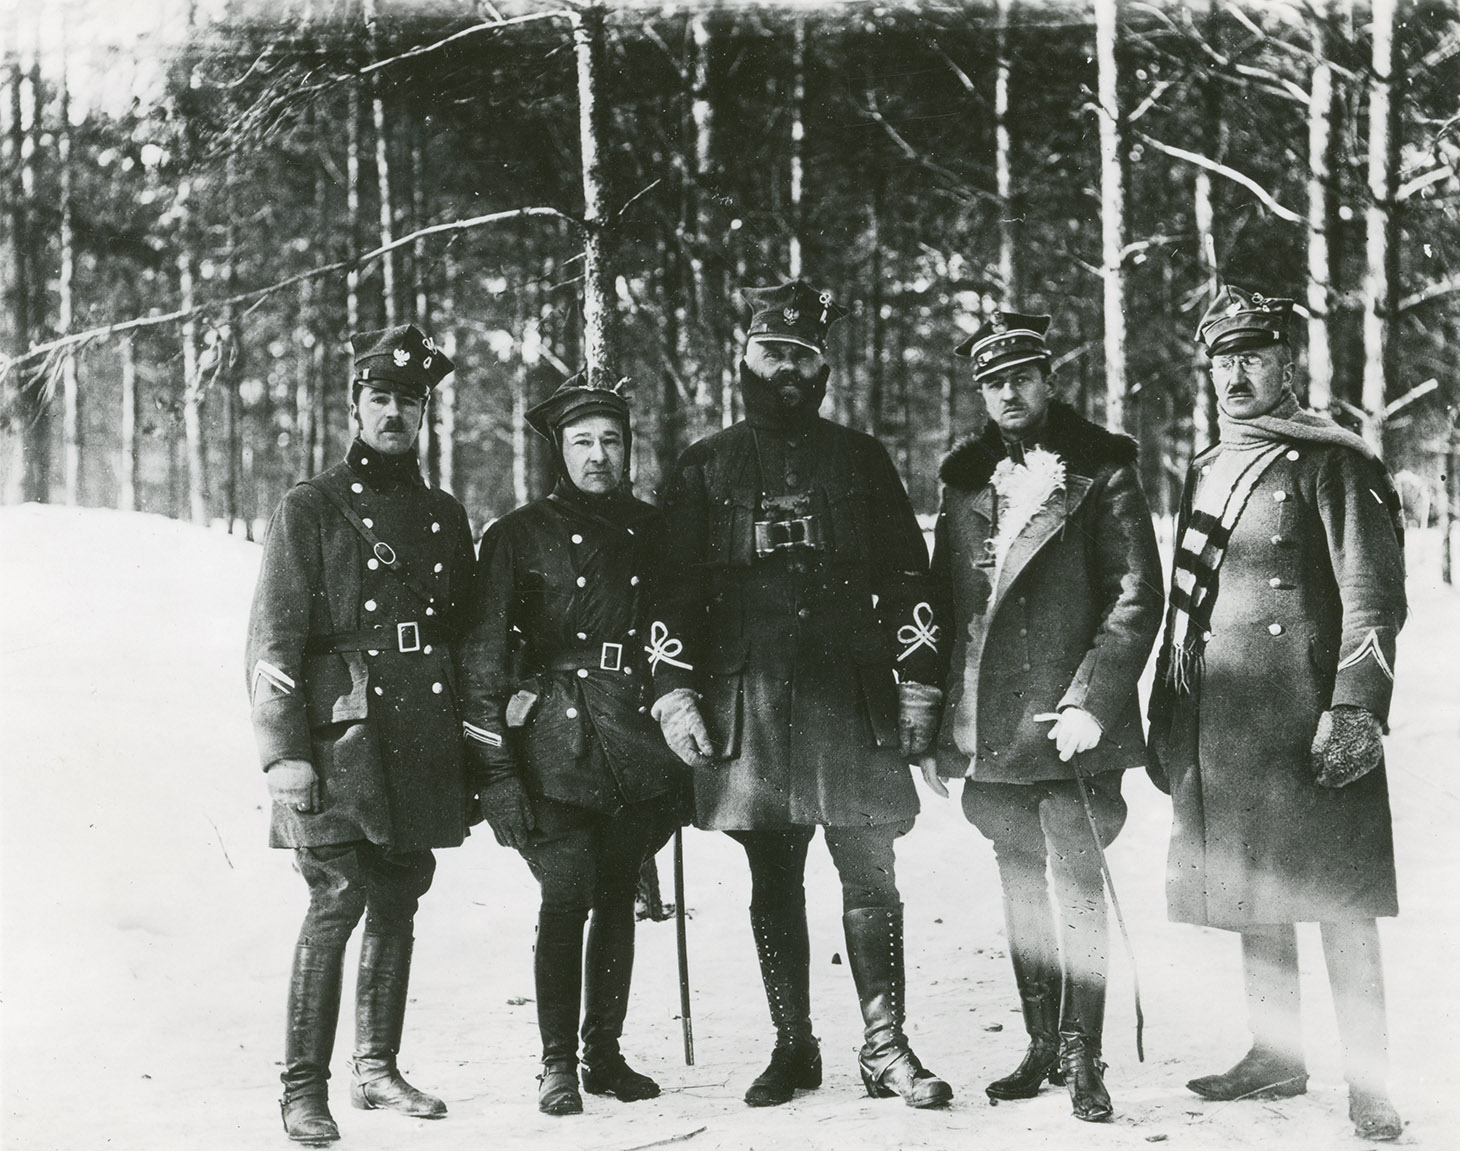 Czarno-biała fotografia przedstawiająca grupę pięciu oficerów w mundurach na tle zimowego lasu. Od lewej stoją: dwaj żołnierze w kurtkach zimowych, dwurzędowych i butach oficerkach. Trzecia postać centralna i najwyższa to Generał Daniel Konarzewski. Stoi z opuszczonymi swobodnie rękami w kurtce z oznakami generalskimi na rękawach, w bryczesach i wysokich butach . Na jego szyi zawieszona jest lornetka. Żołnierz stojący czwarty od lewej pozuje ze szpicrutą w ręku. Piąty i ostatni w rzędzie oficer ubrany jest w dwurzędowy płaszcz wojskowy, wokół szyi zarzucony ma długi jasny szal. Na głowach wszystkich mężczyzn czapki rogatywki.